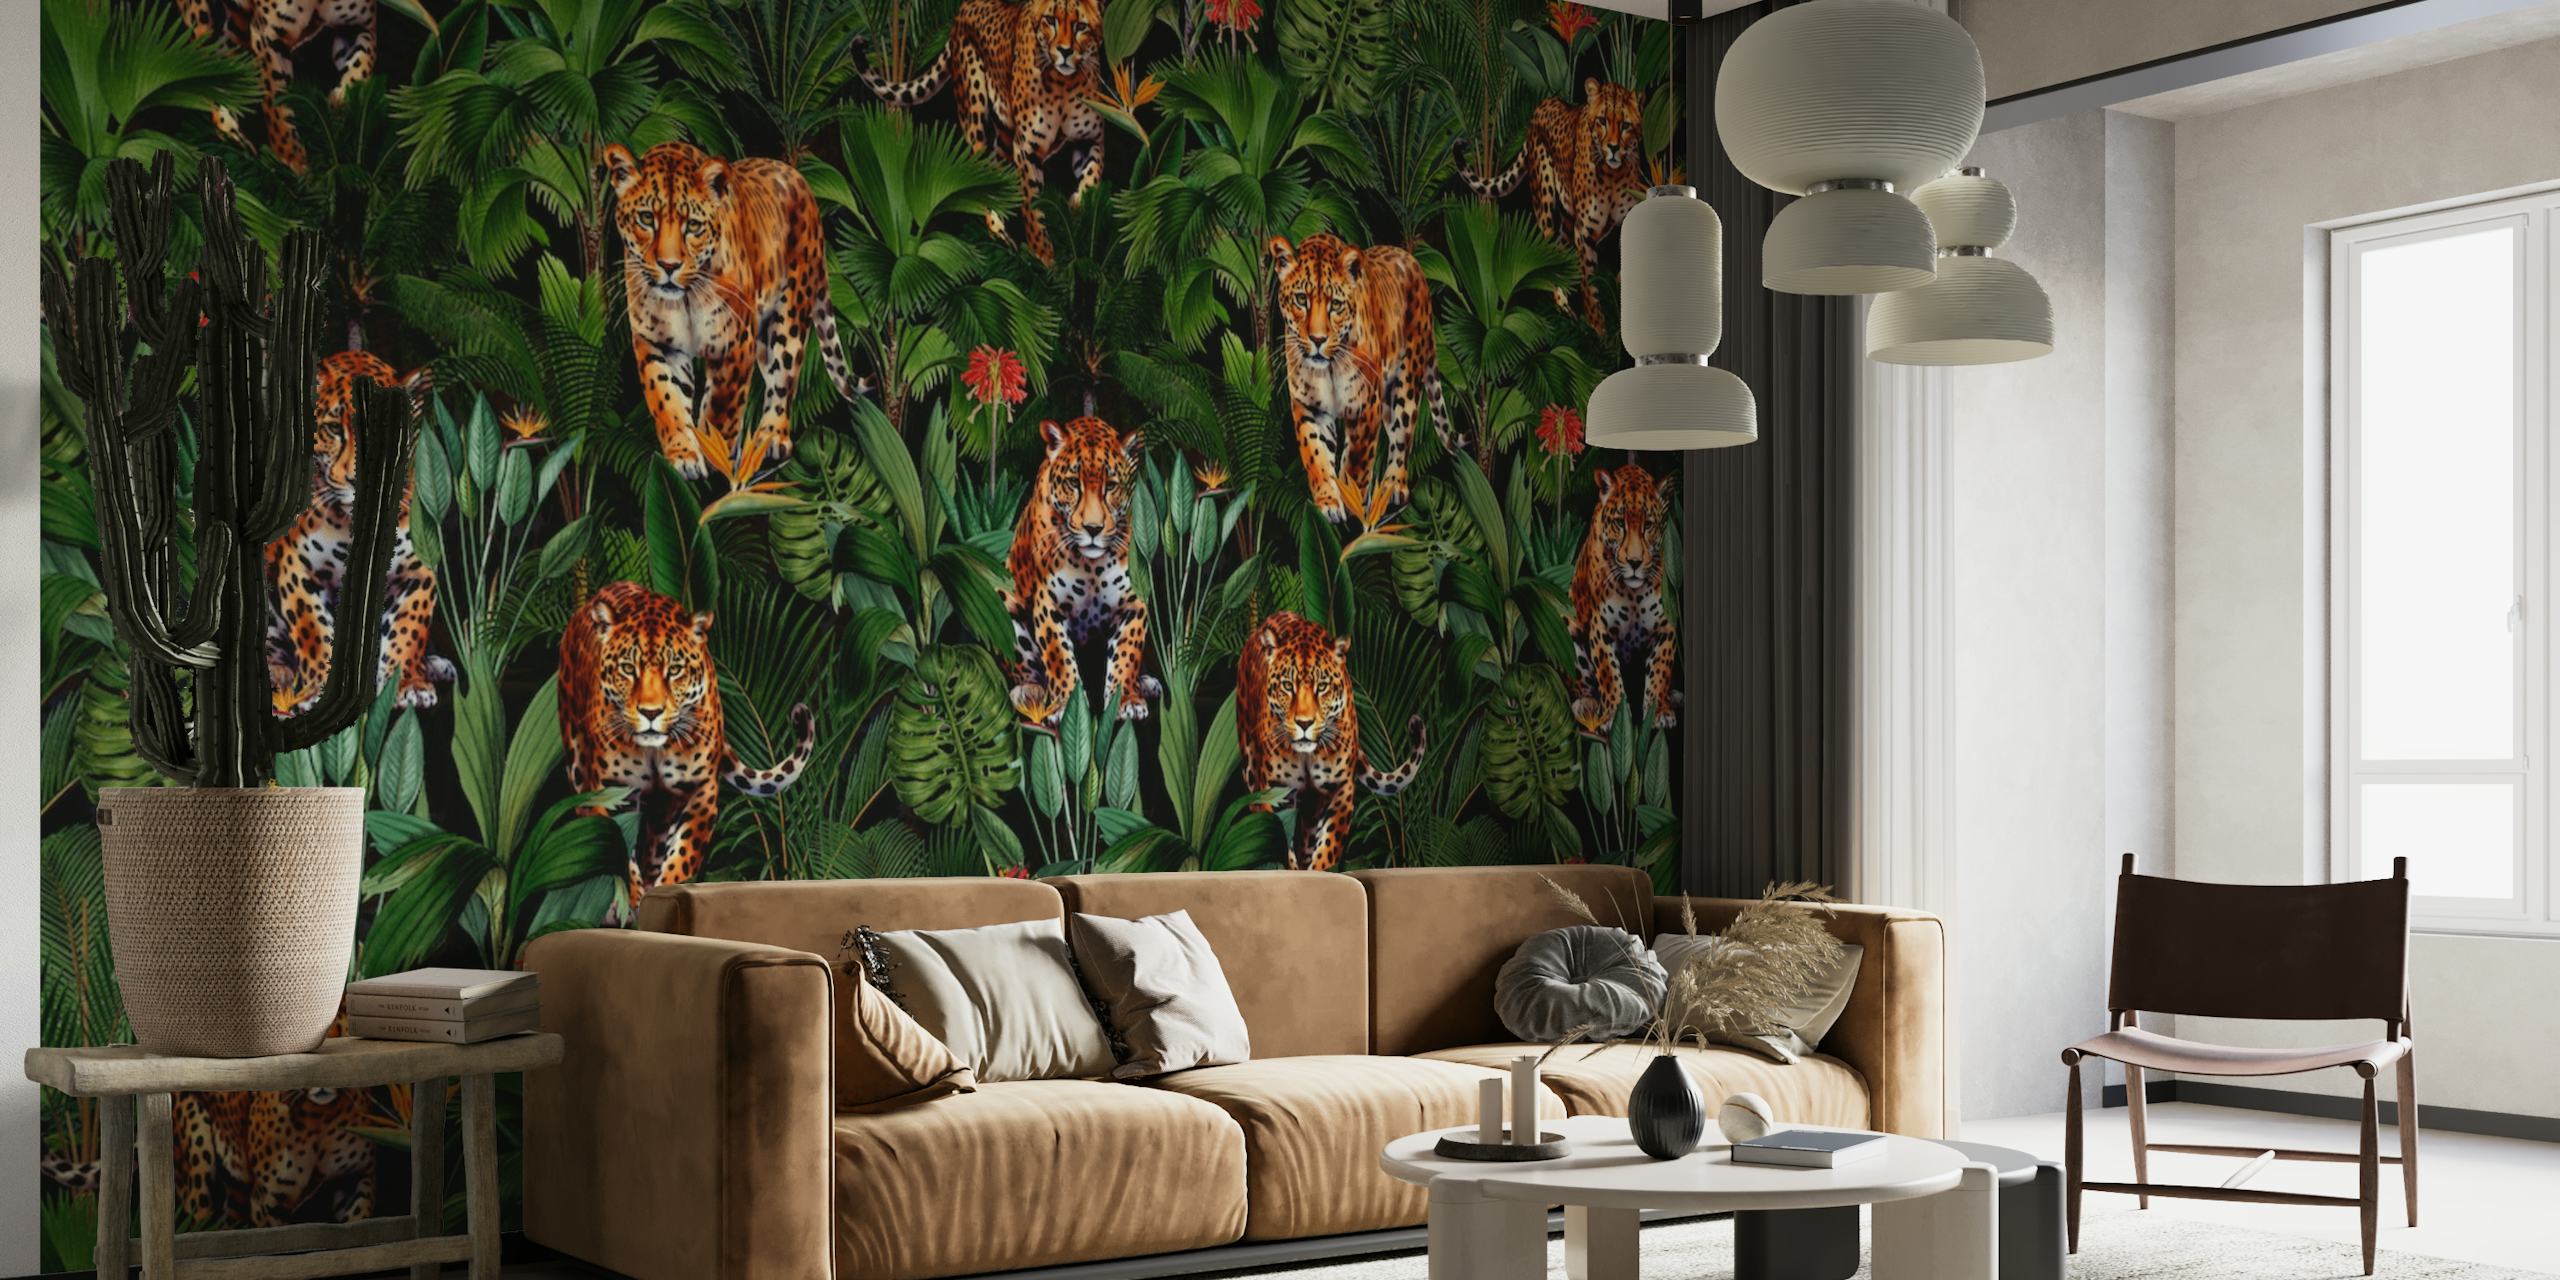 Un mural de pared de una exuberante jungla con tigres escondidos entre el follaje verde en un ambiente nocturno.